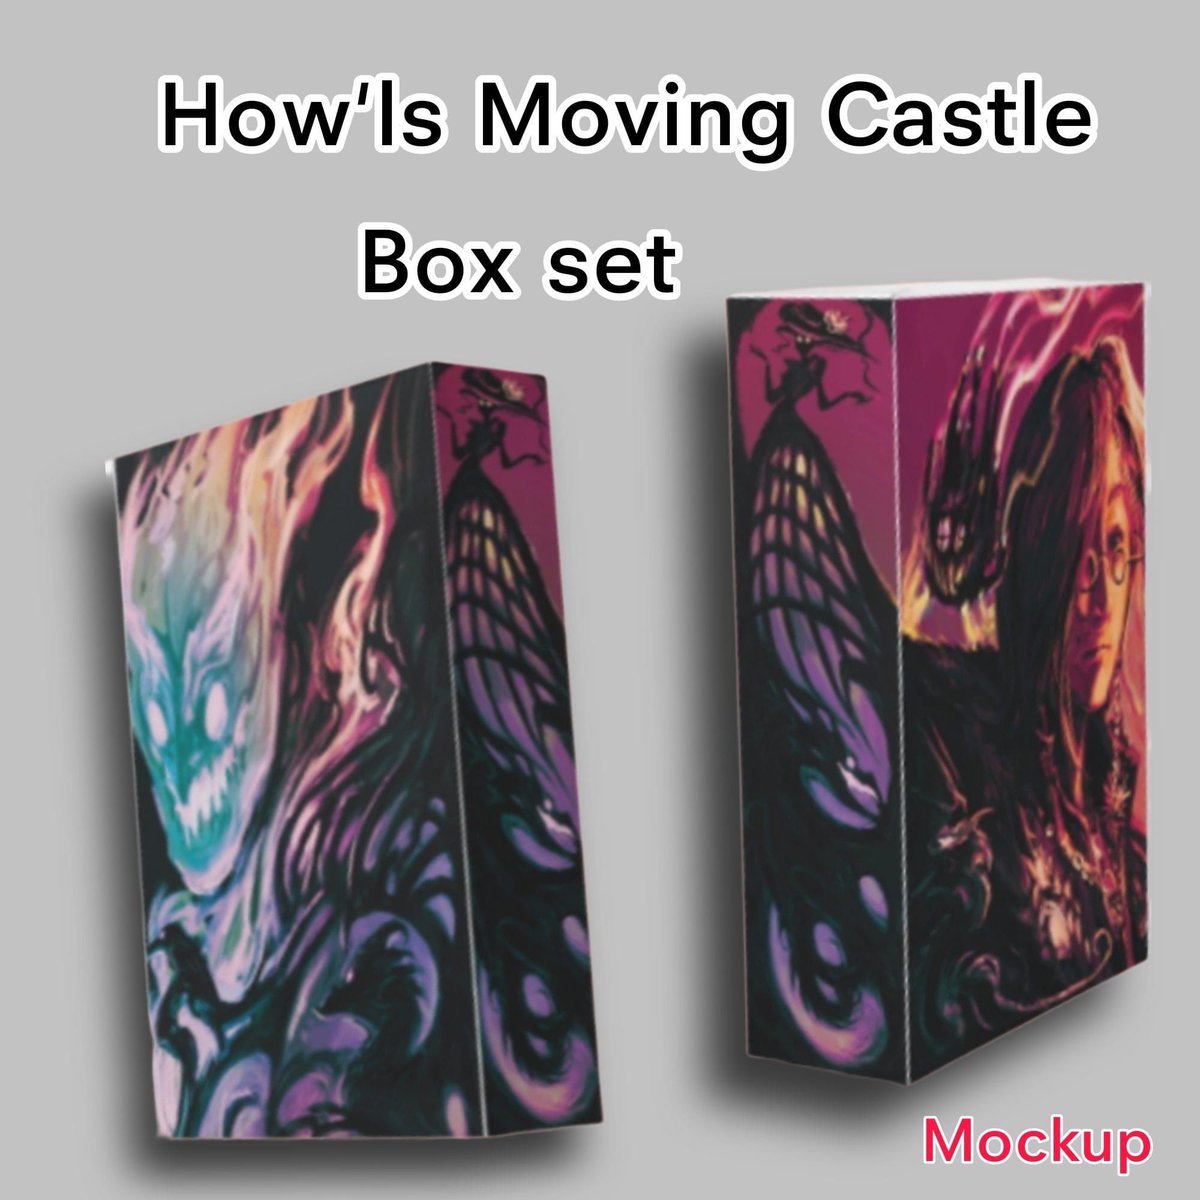 📣 #เปิดพรีออเดอร์แล้วววว  Howl's Moving Castle ฉบับปกอ่อน 
🏰  จะมีทั้งหมด 3 เล่ม 
เล่มที่ 1 : Howl's Moving Castle ปราสาทเวทมนตร์ของฮาวล์
เล่มที่ 2 : Castle In The Air ปราสาทกลางเวหา
เล่มที่ 3 : House of Many Ways บ้านวิเศษของพ่อมดนอร์แลนด์
═════════════════